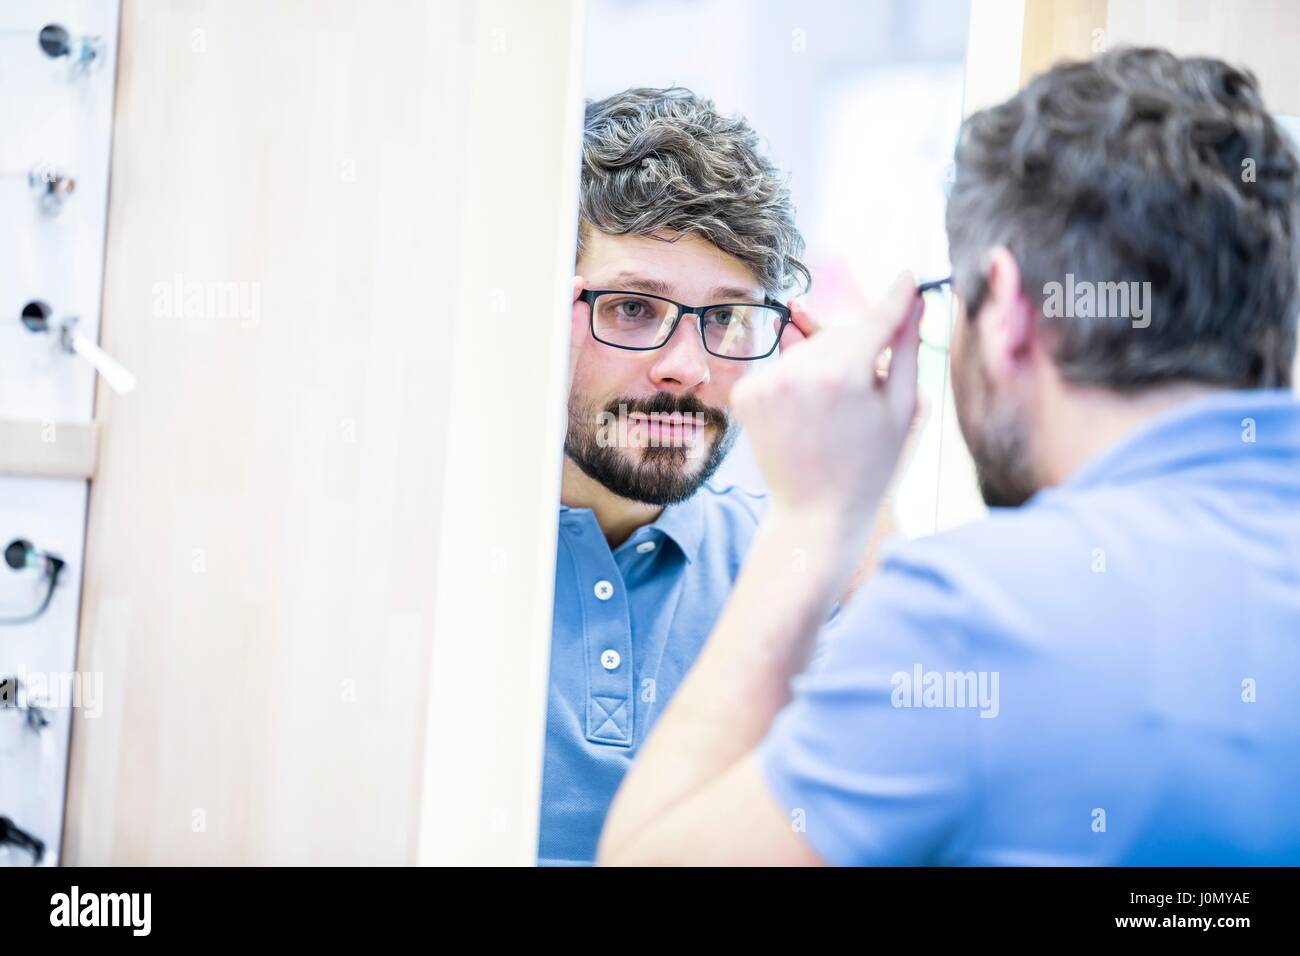 Hombre tratando de vasos en el optometrista de la tienda. Foto de stock